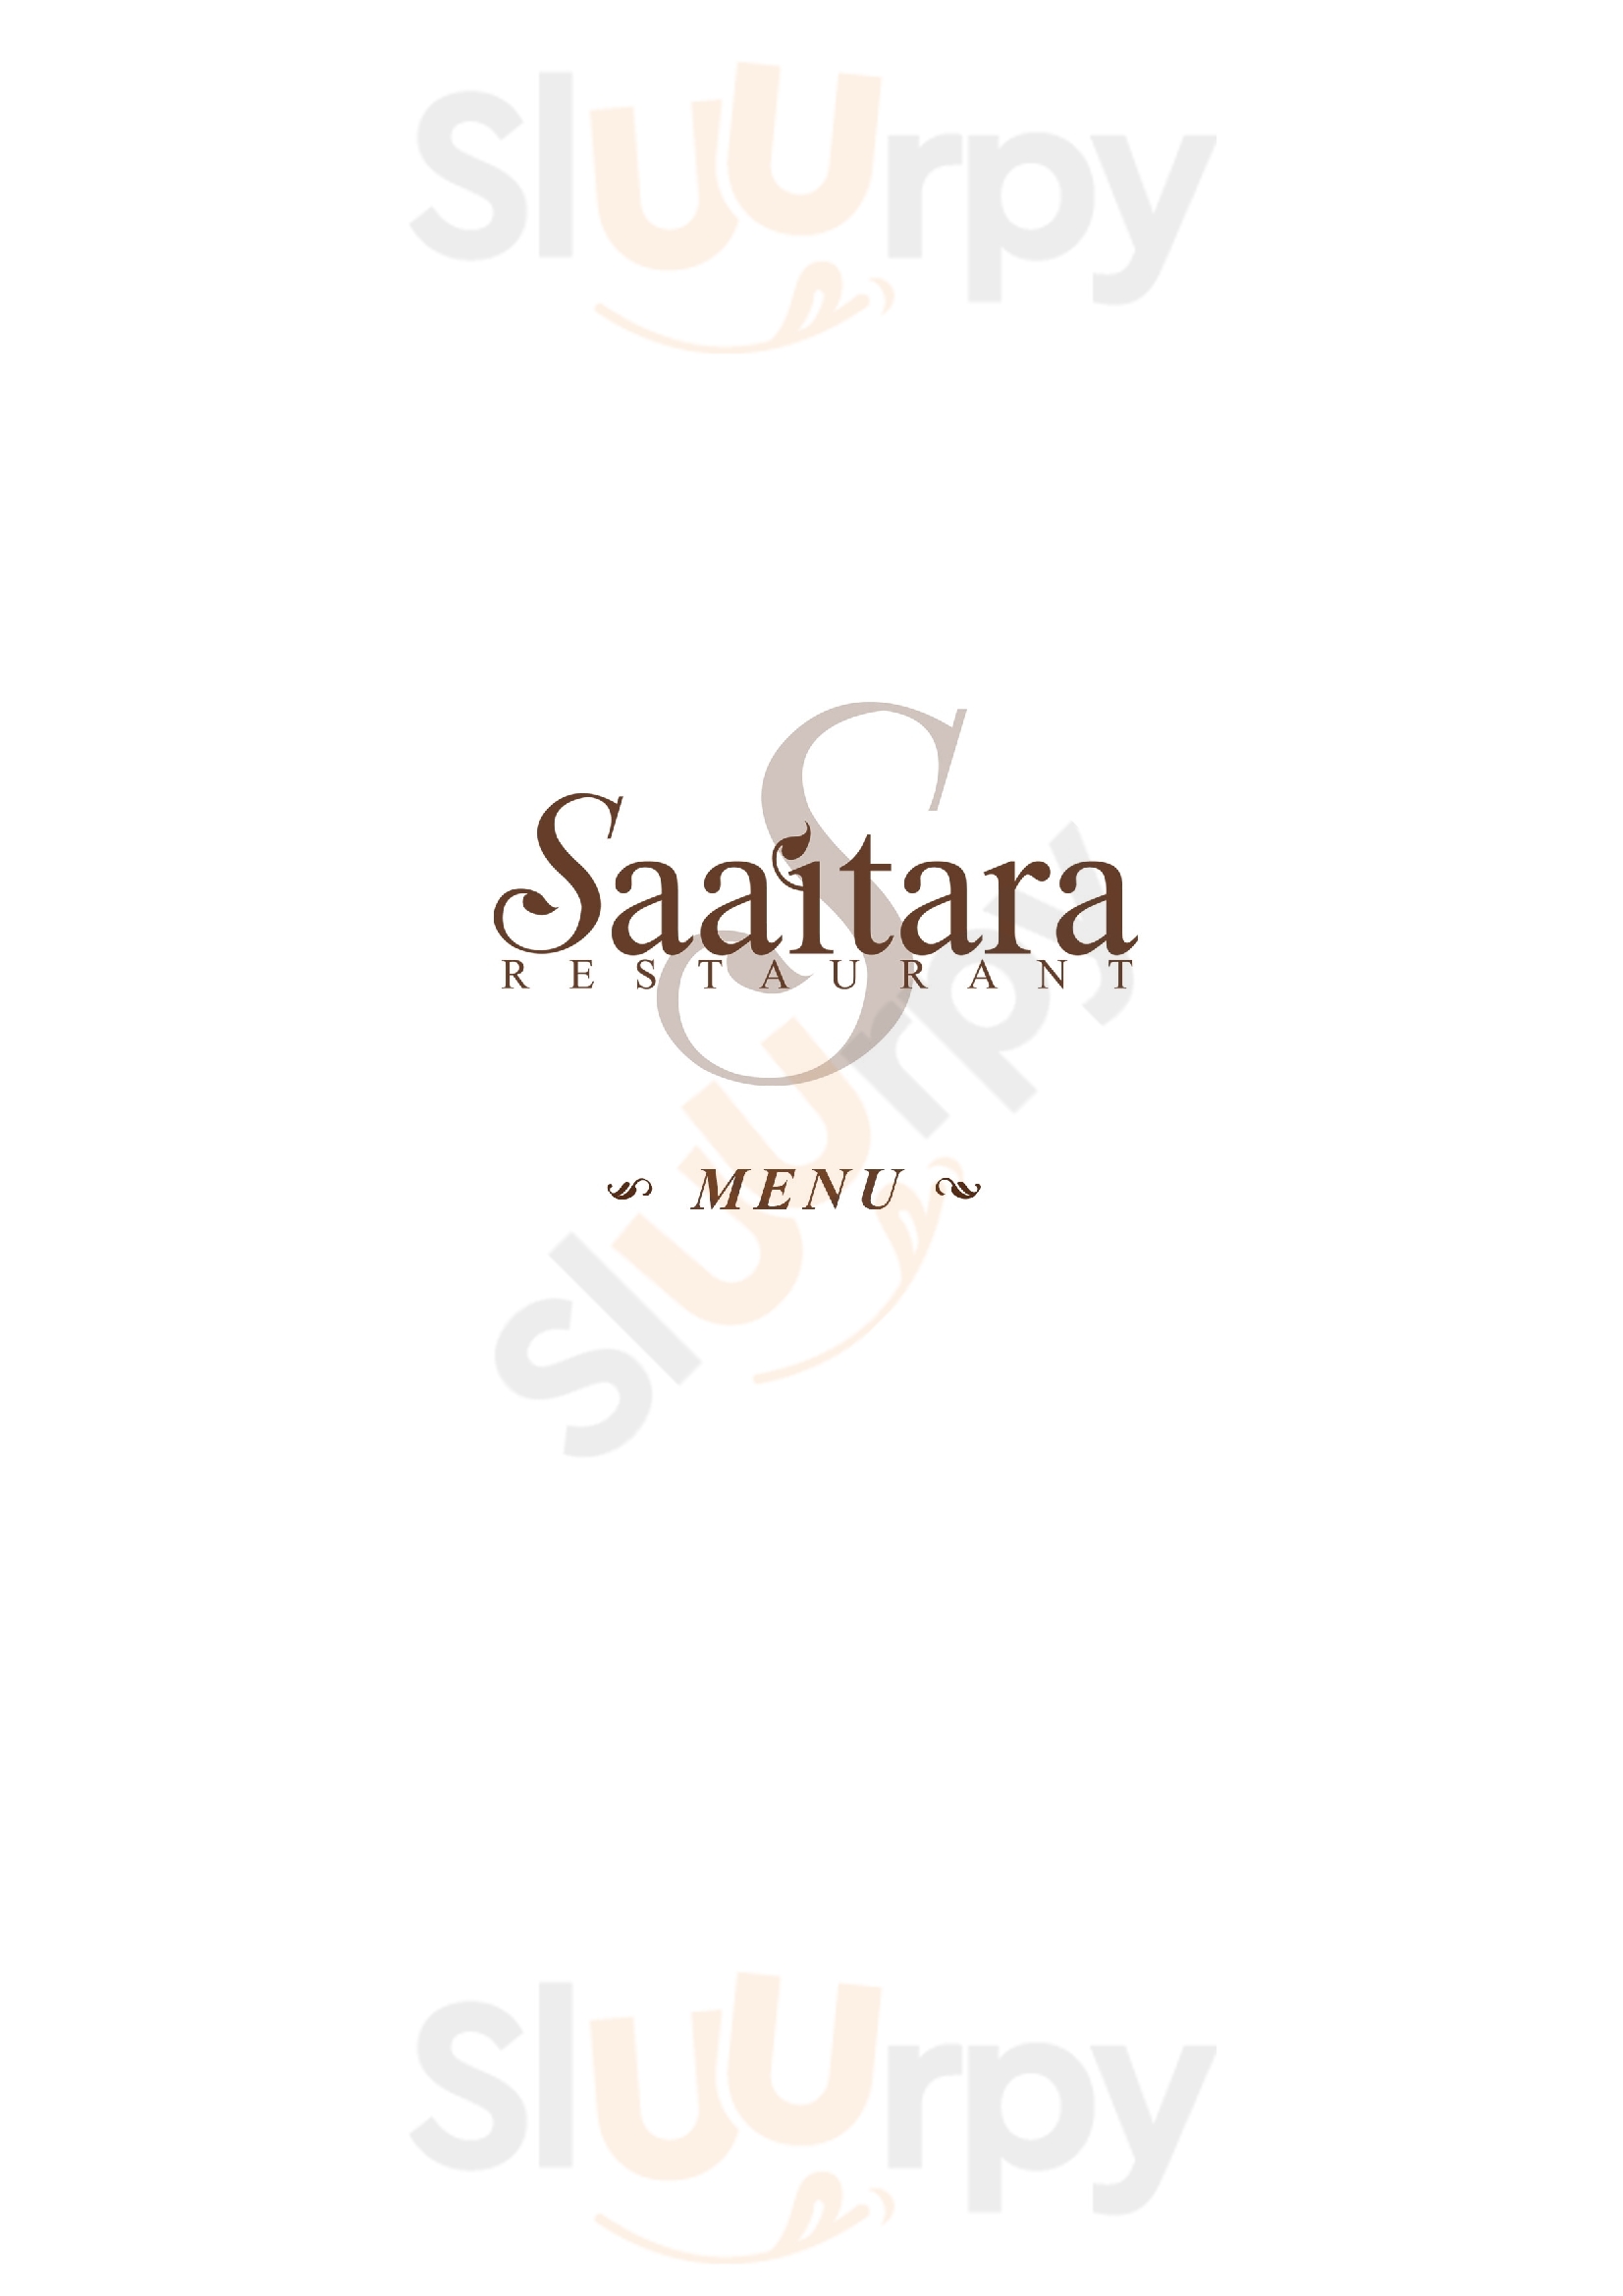 Saaitara Restaurant จังหวัดพังงา Menu - 1